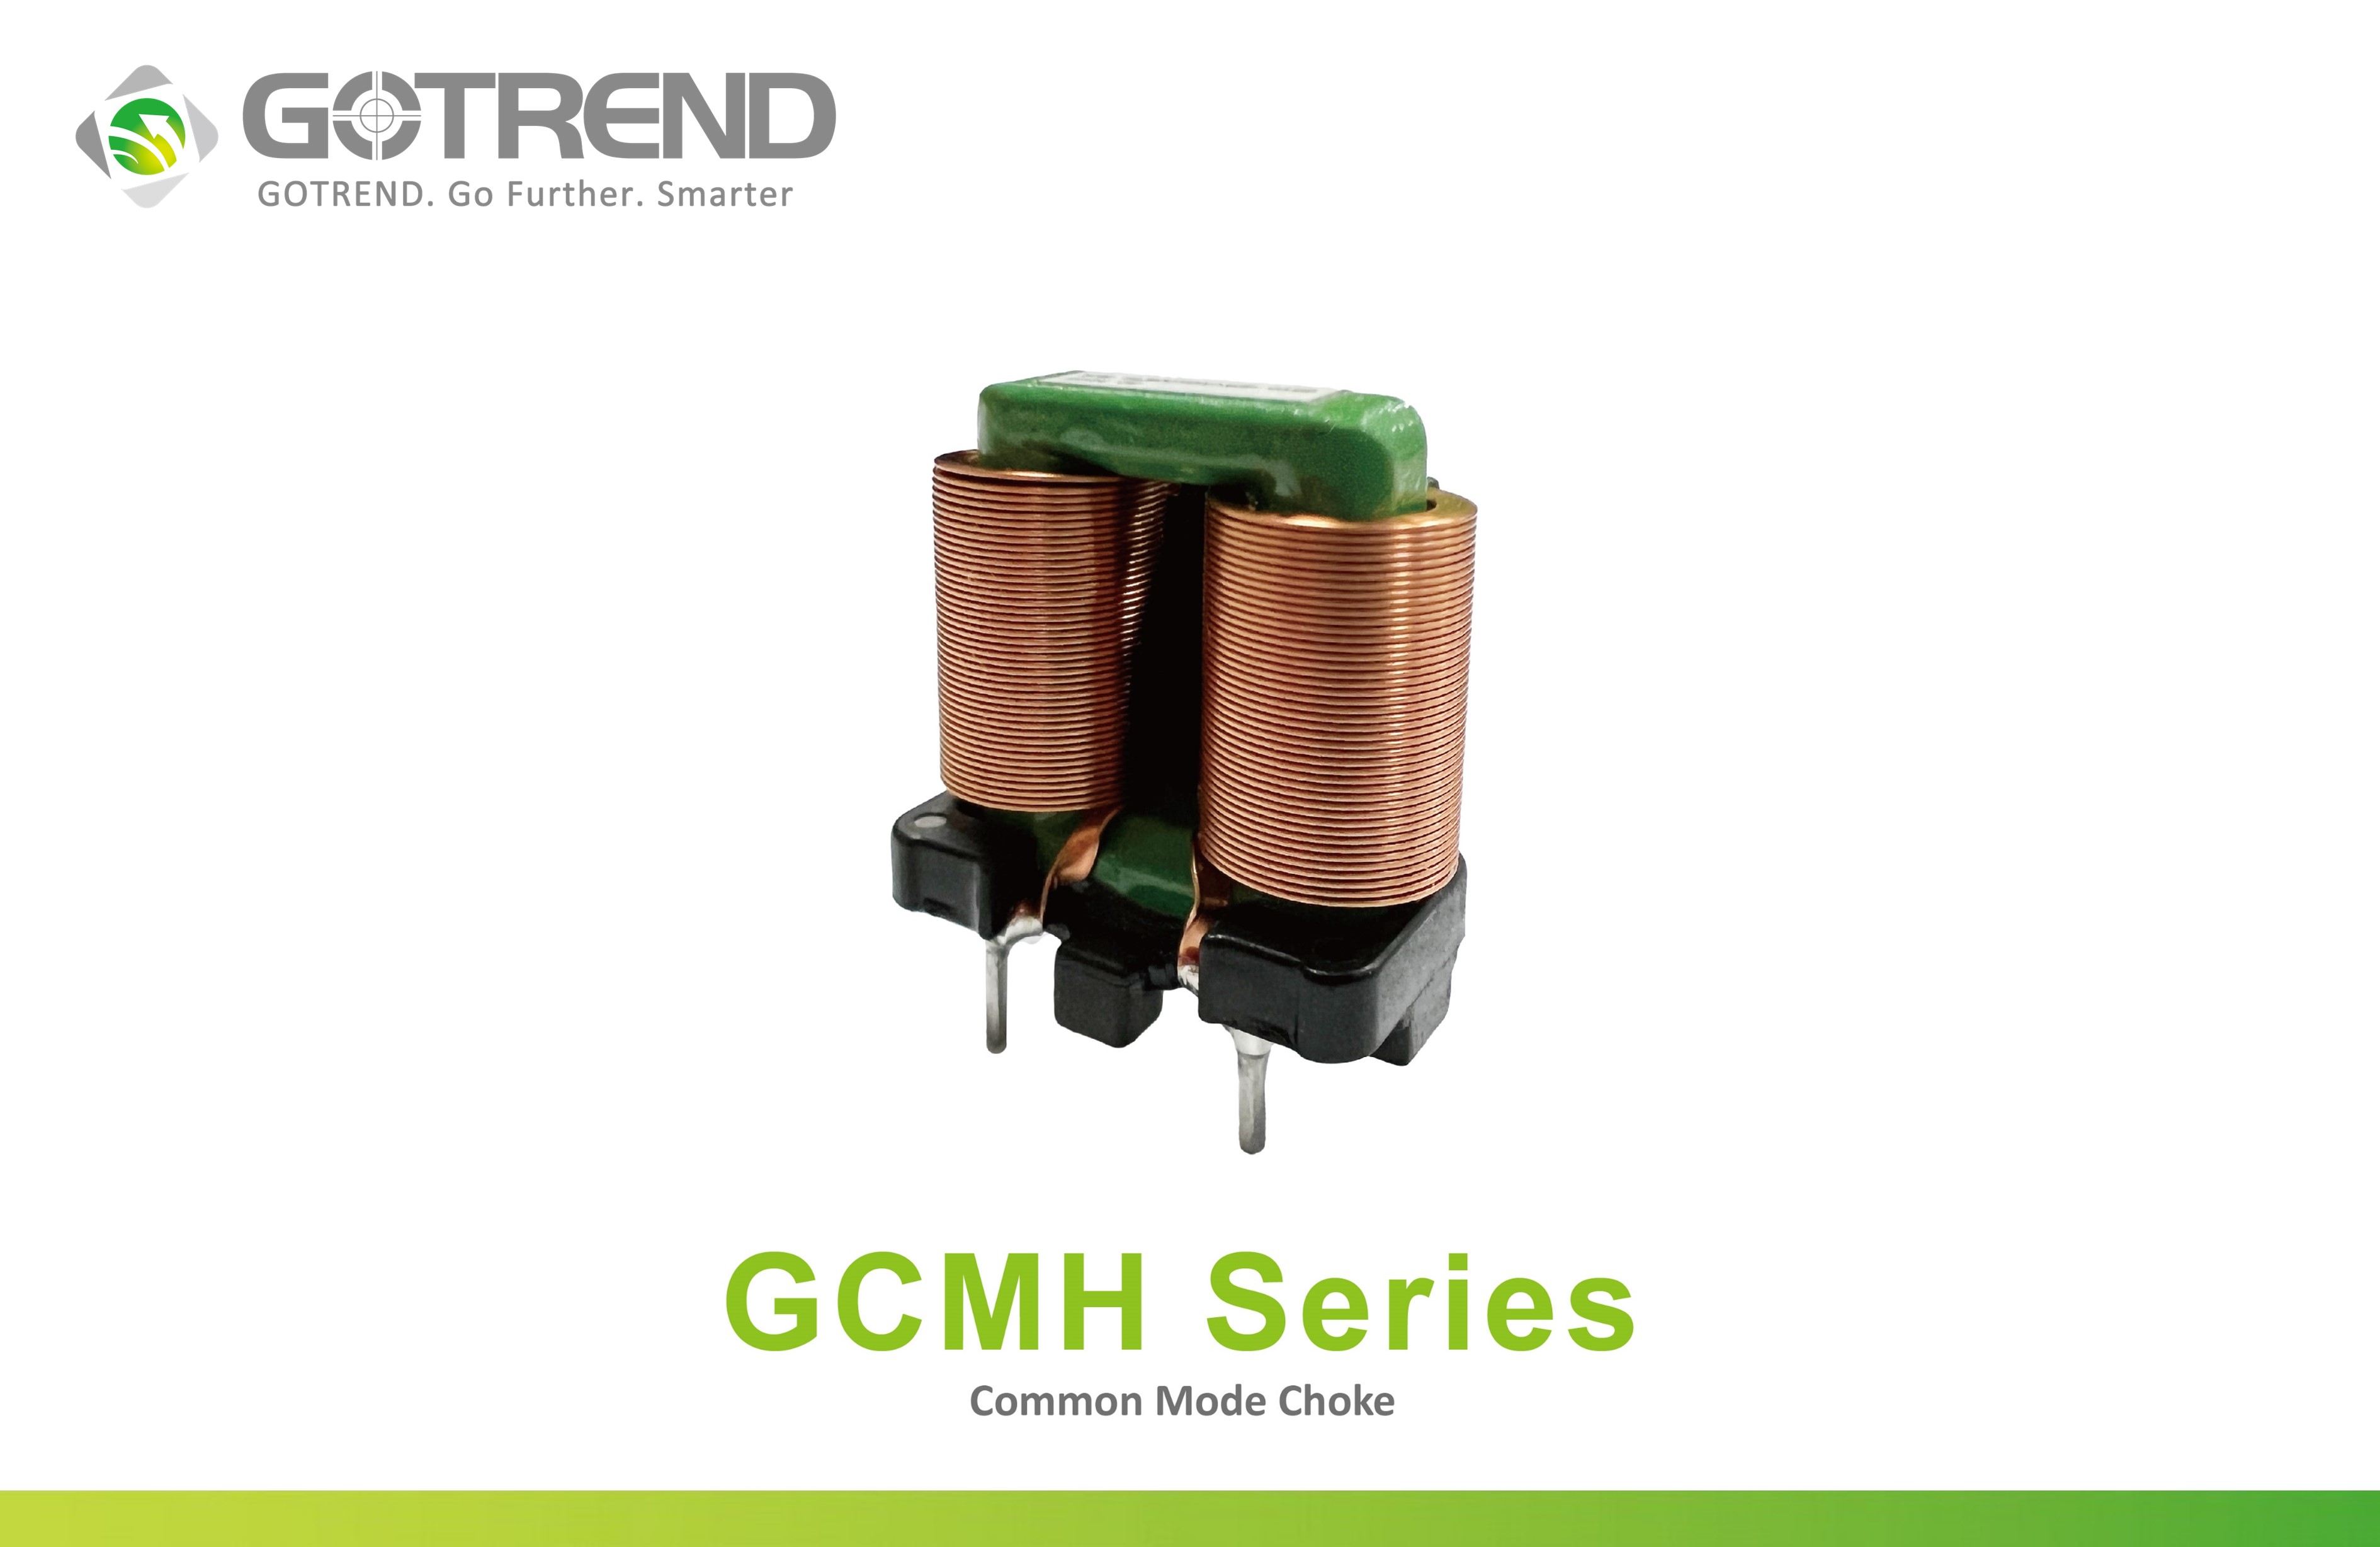 共模扼流圈【GCMH Series】高效抑制噪聲，提升功率線路設計的理想選擇 Common Mode Choke Coil 【GCMH Series】An ideal choice for efficiently suppressing noise and enhancing power line circuit designs.